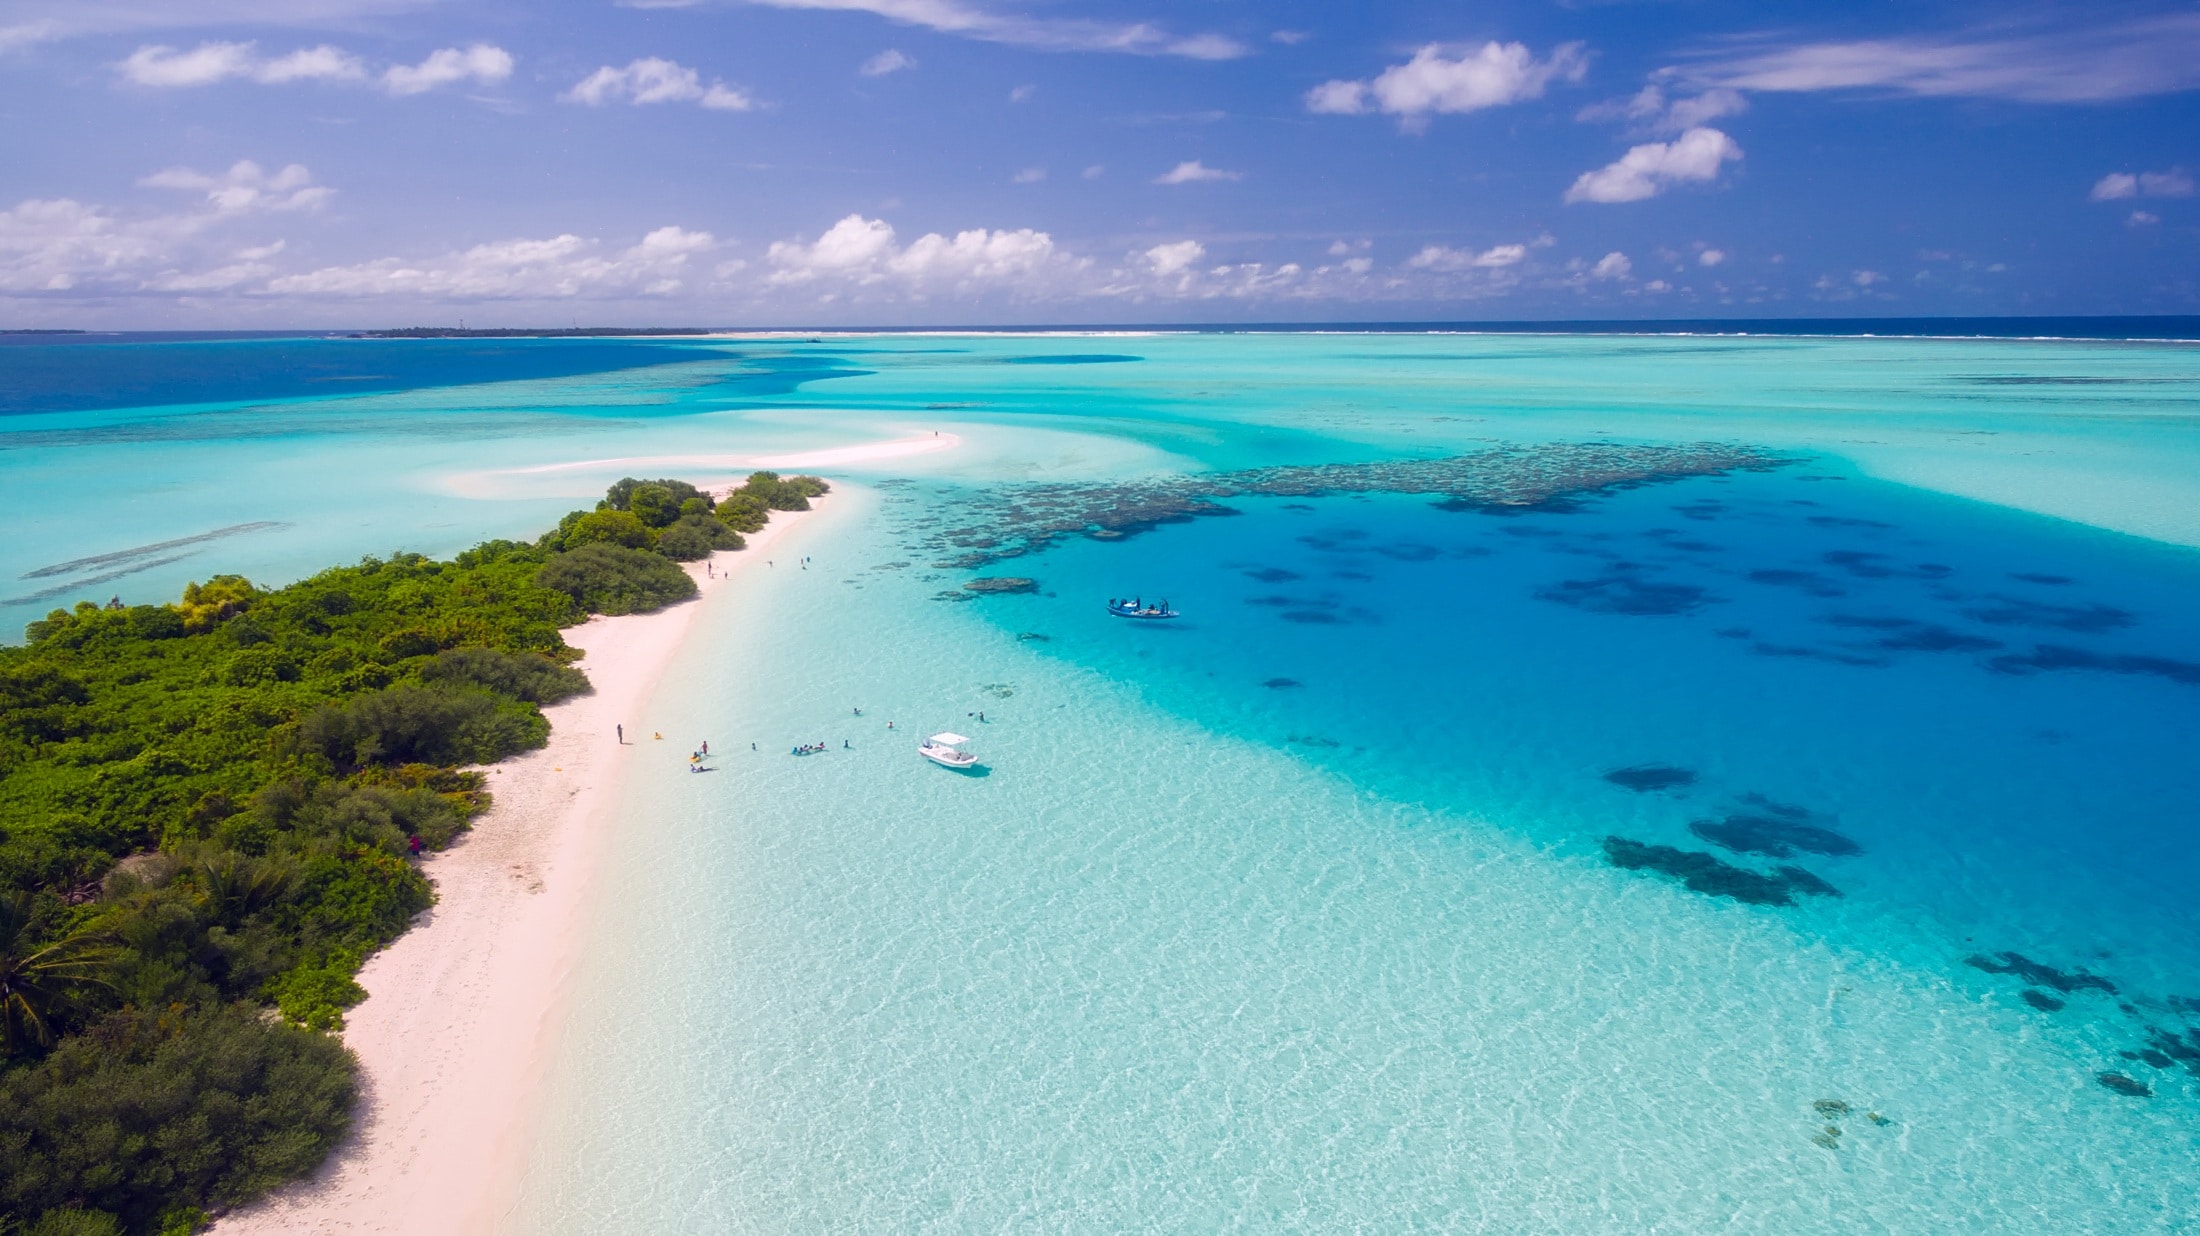 Maldivi popularna turistička destinacija 2021